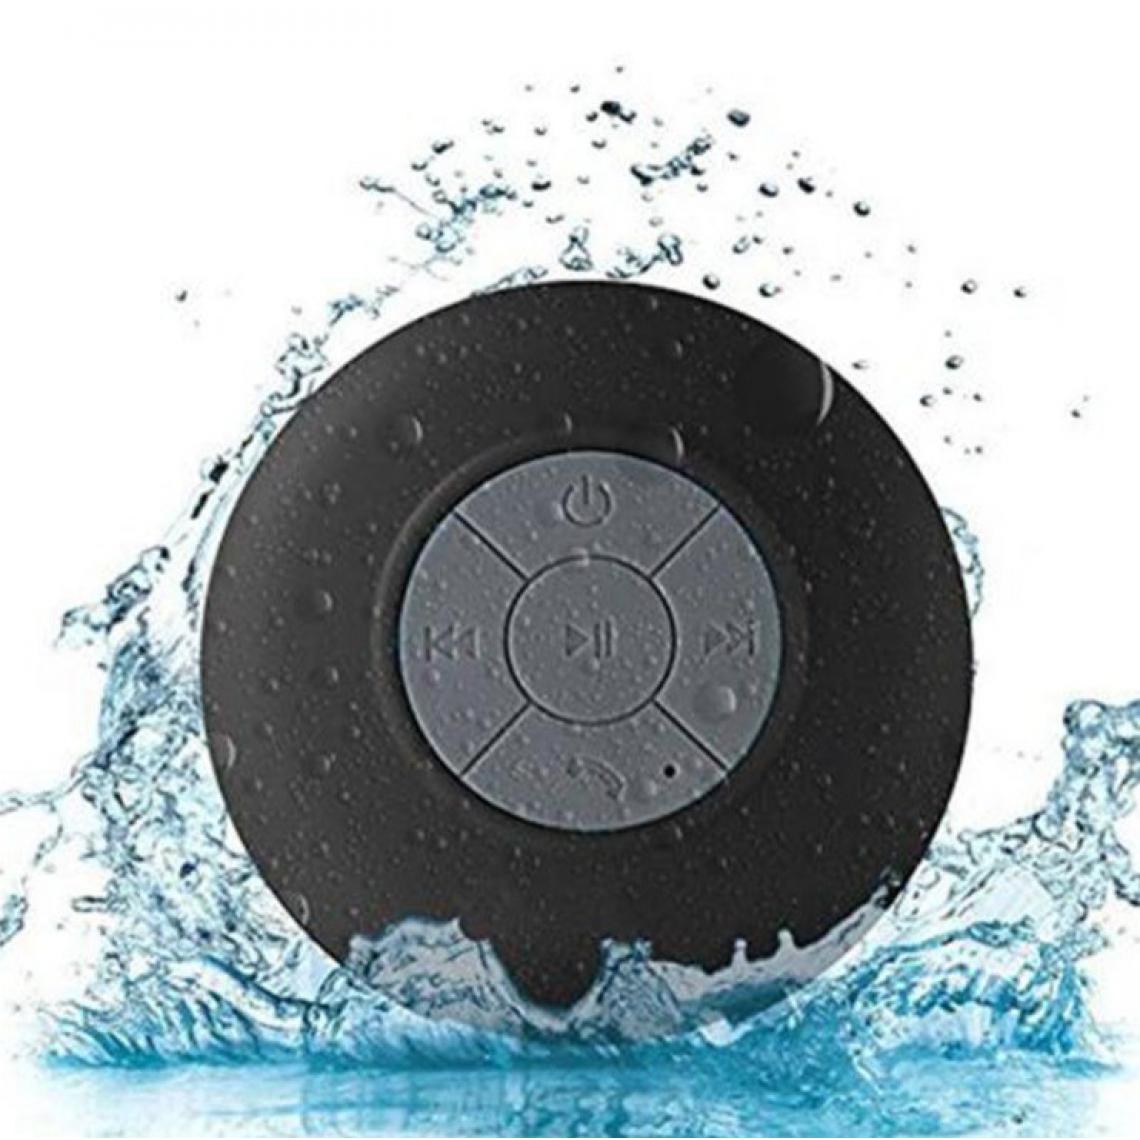 Shot - Enceinte Waterproof Bluetooth pour ONEPLUS 8 Smartphone Ventouse Haut-Parleur Micro Douche Petite (NOIR) - Autres accessoires smartphone